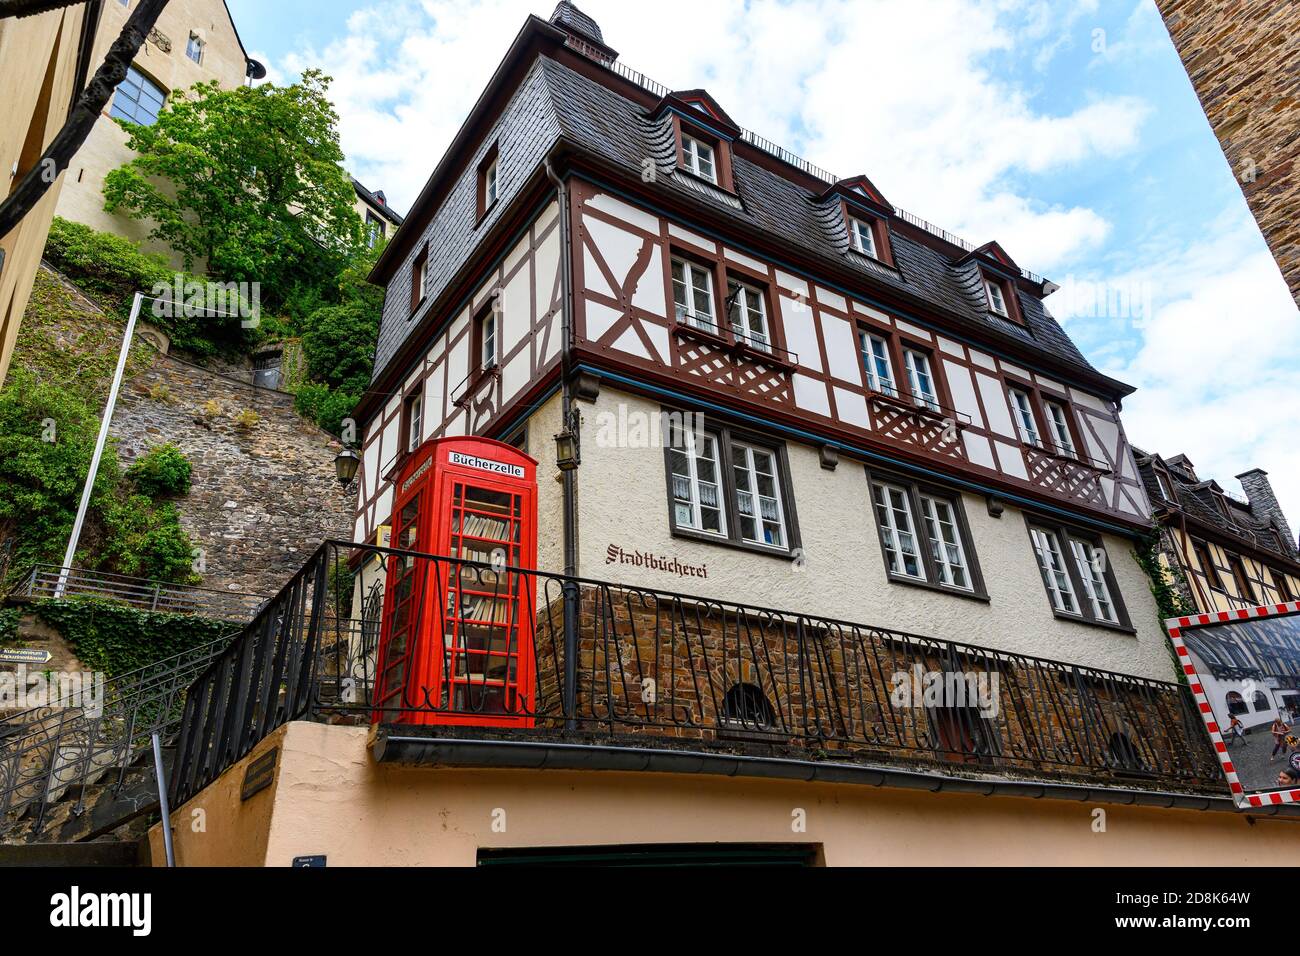 18 juillet 2020 : Cochem. Belle ville historique sur la romantique Moselle, la Moselle. Vue sur la ville, maison à colombages, maisons. Rhénanie-Palatinat, allemand Banque D'Images